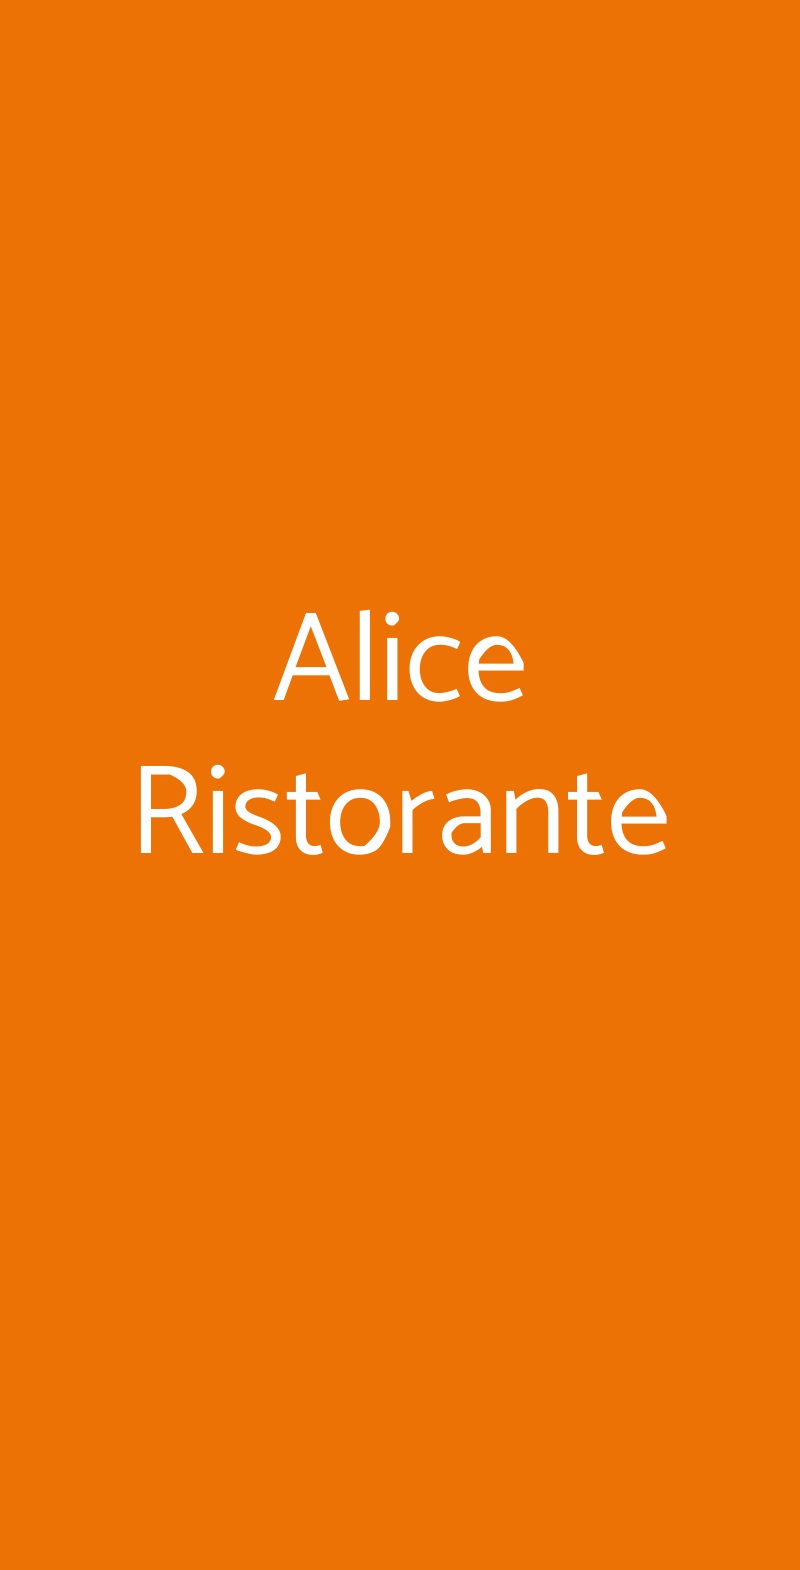 Alice Ristorante Chiari menù 1 pagina